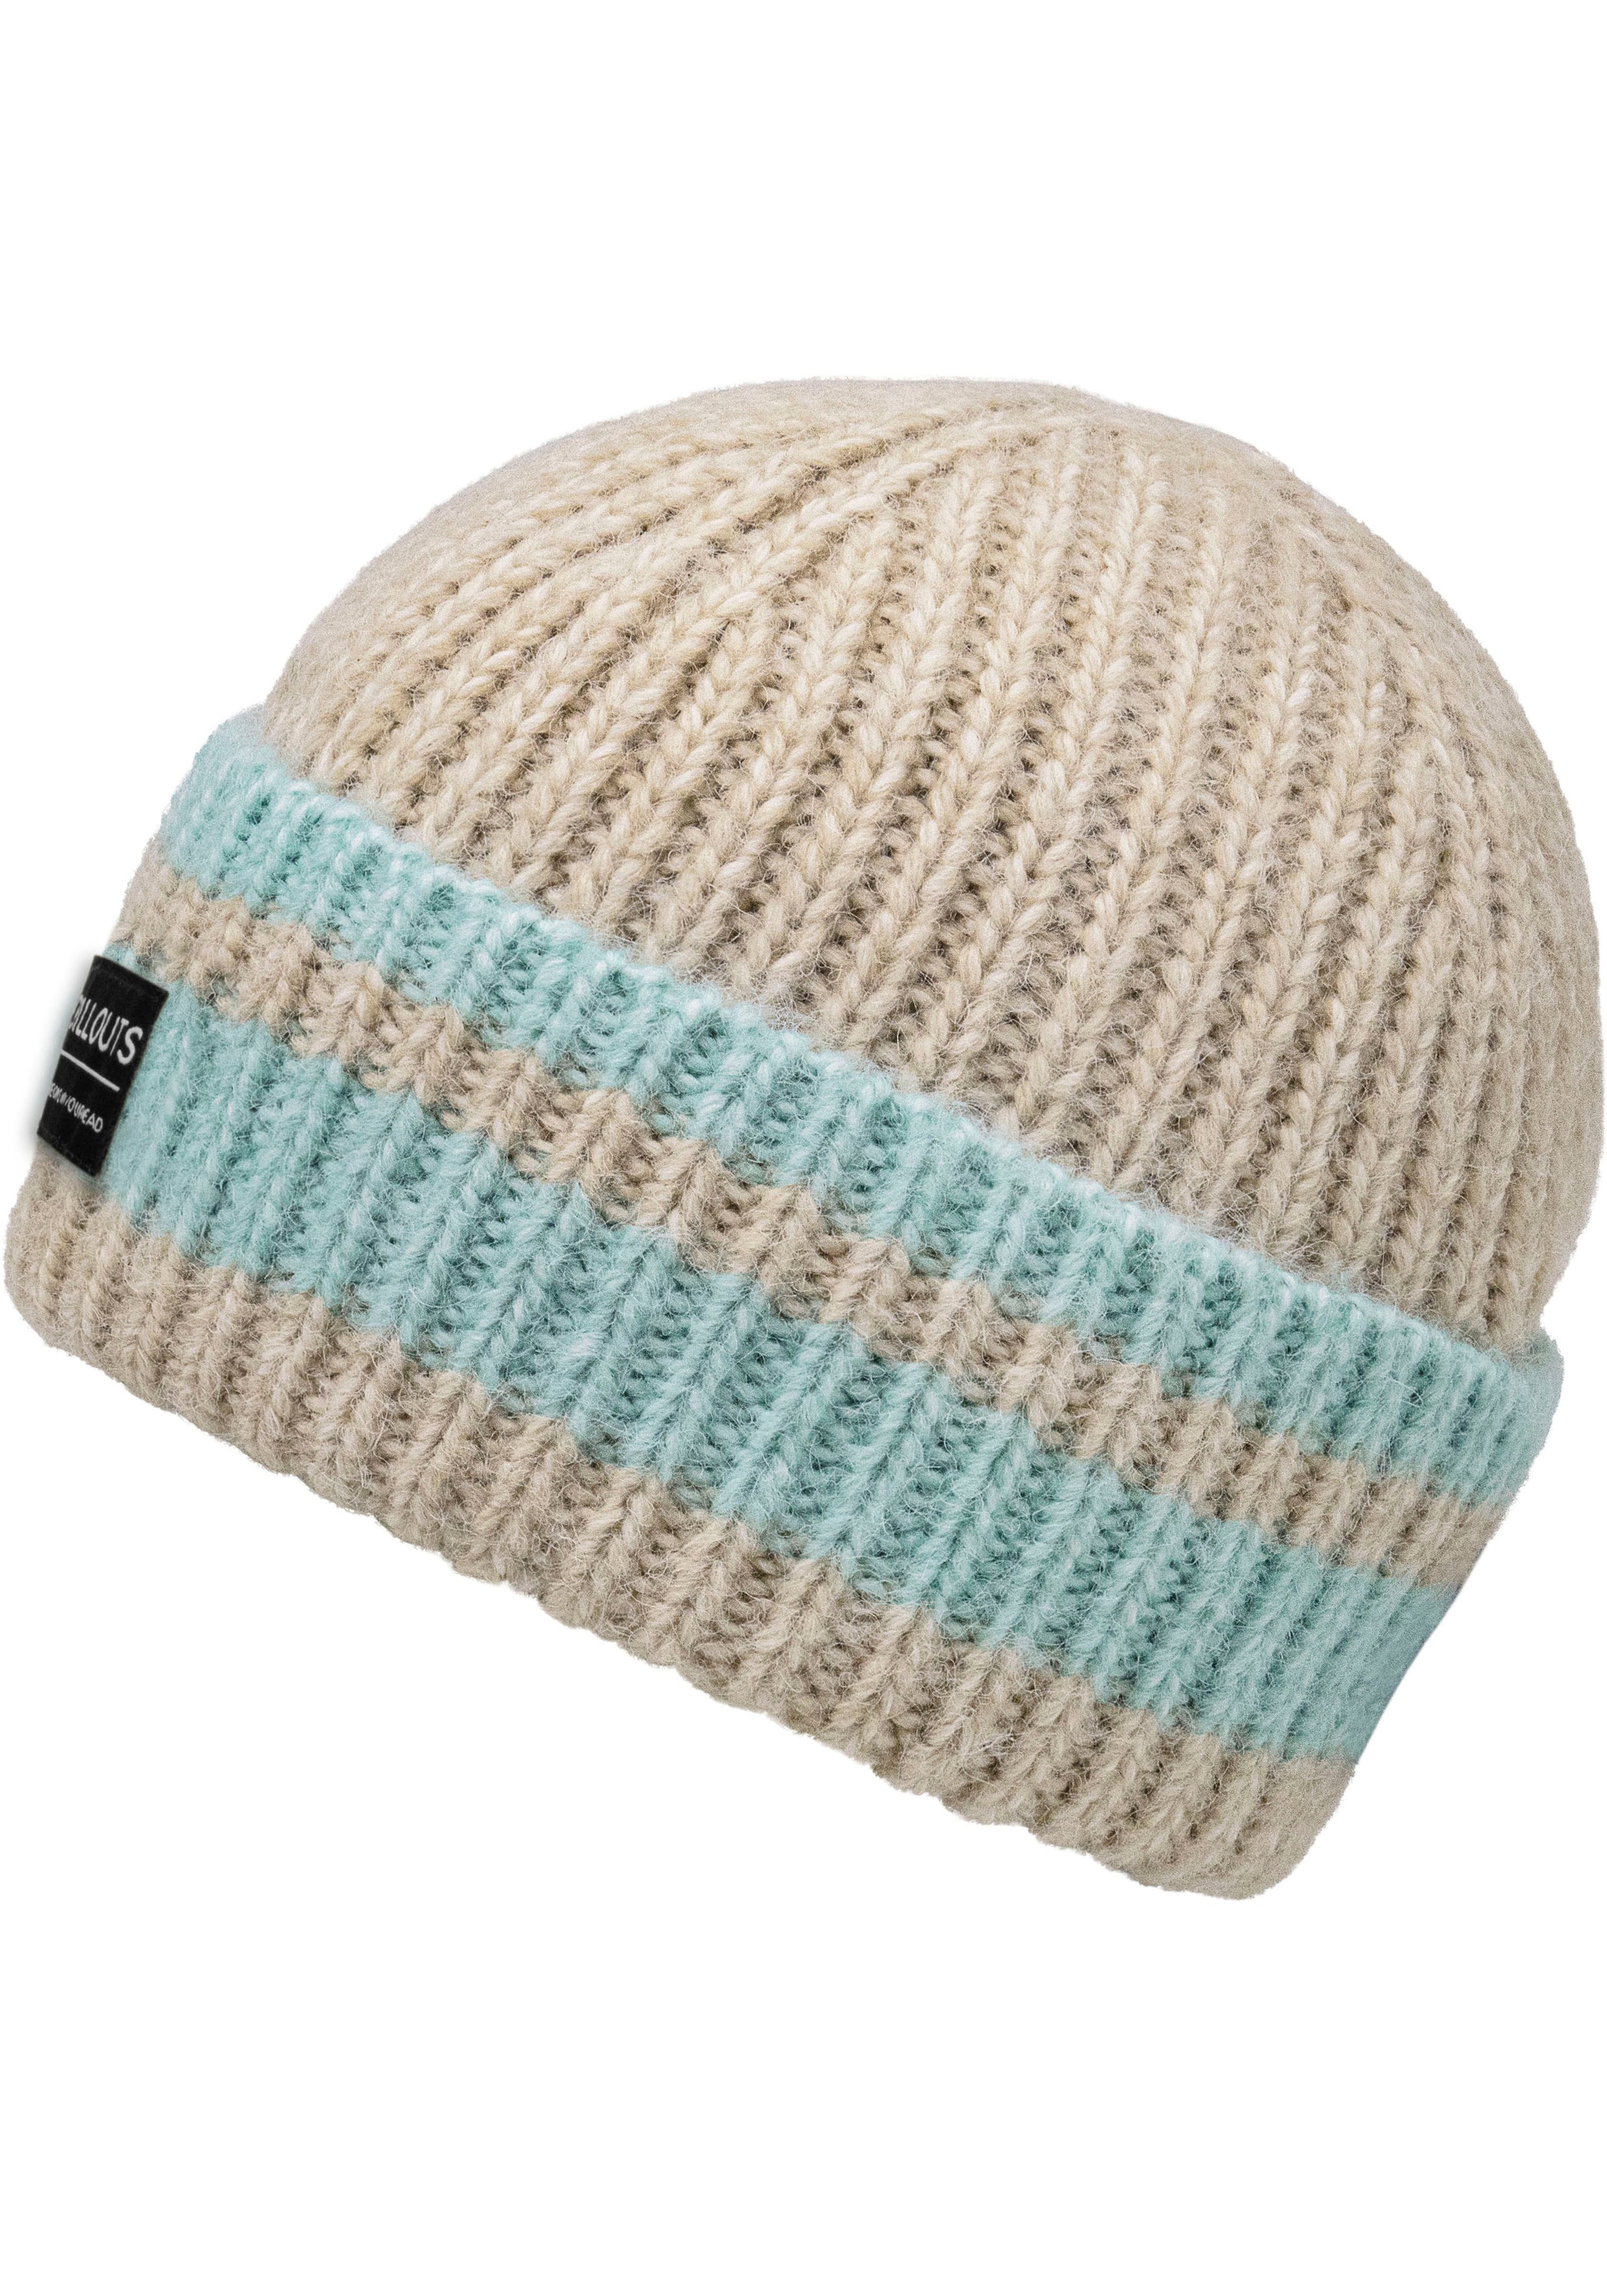 chillouts Strickmütze »Cooper Hat«, mit Kontrast-Streifen